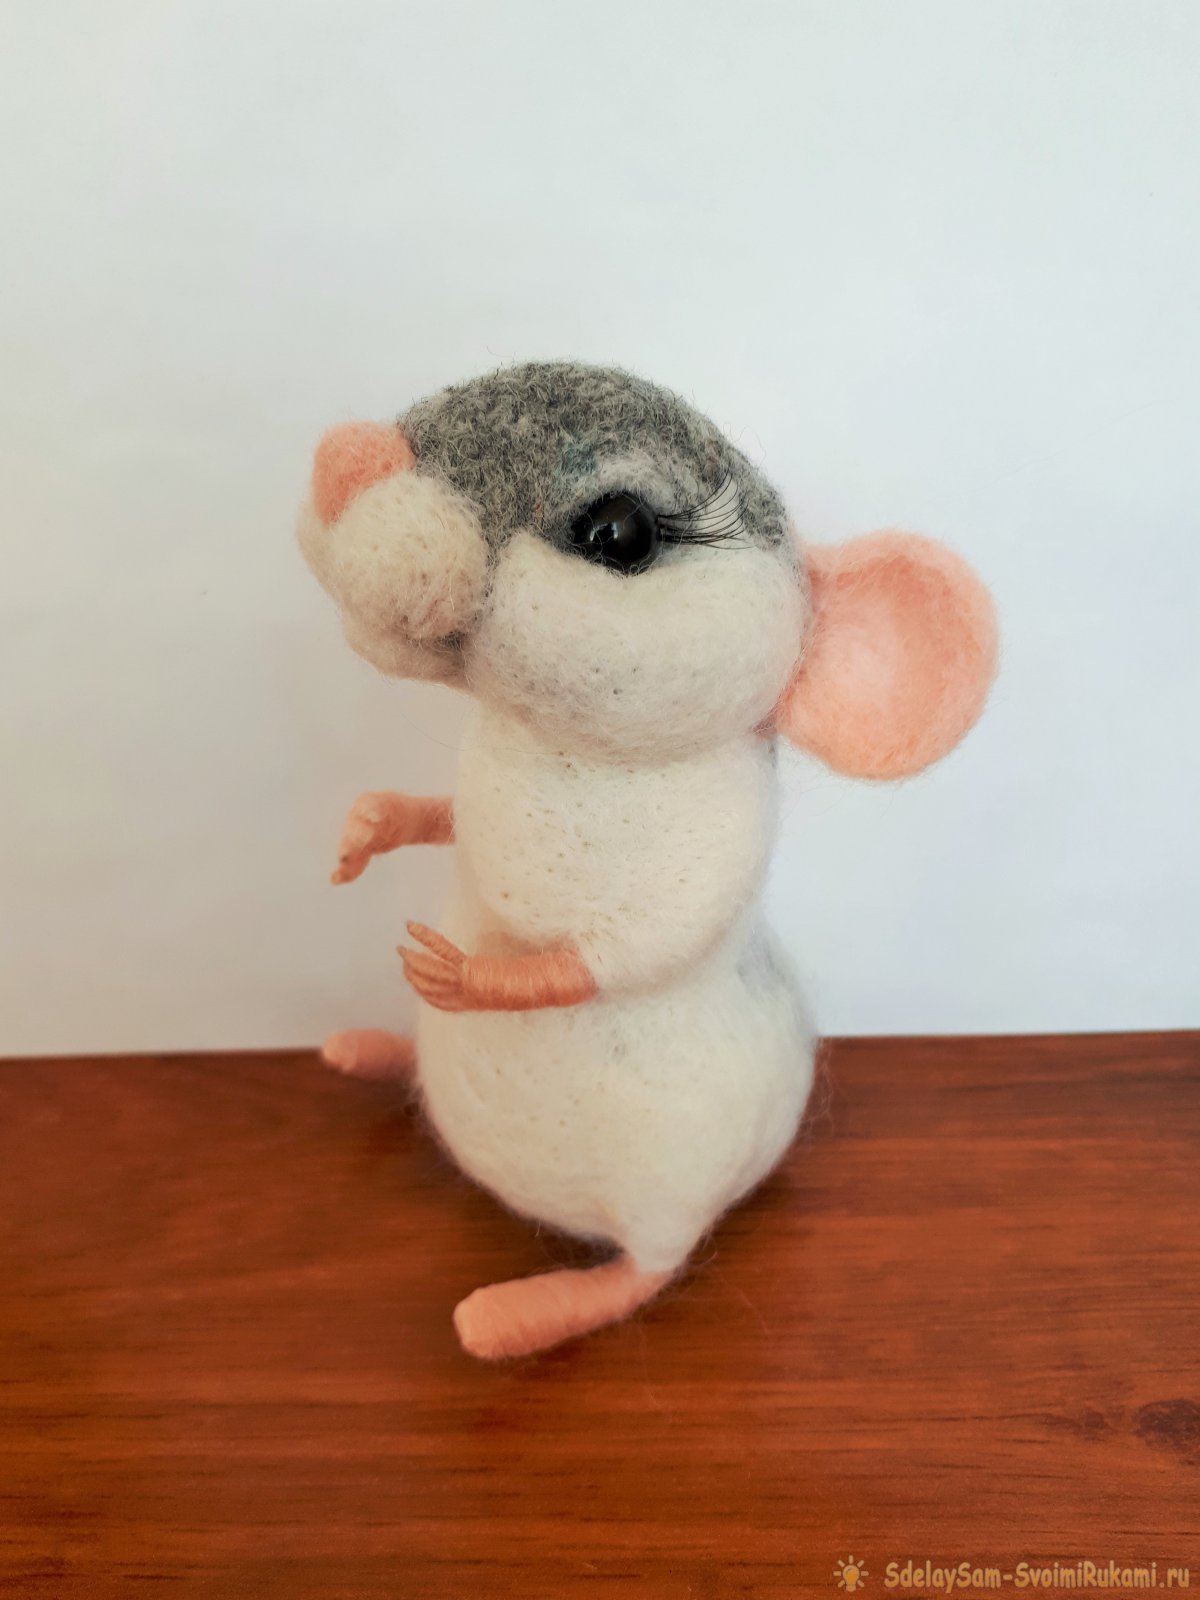 Игрушки из шерсти: Мышка - символ 2020 года